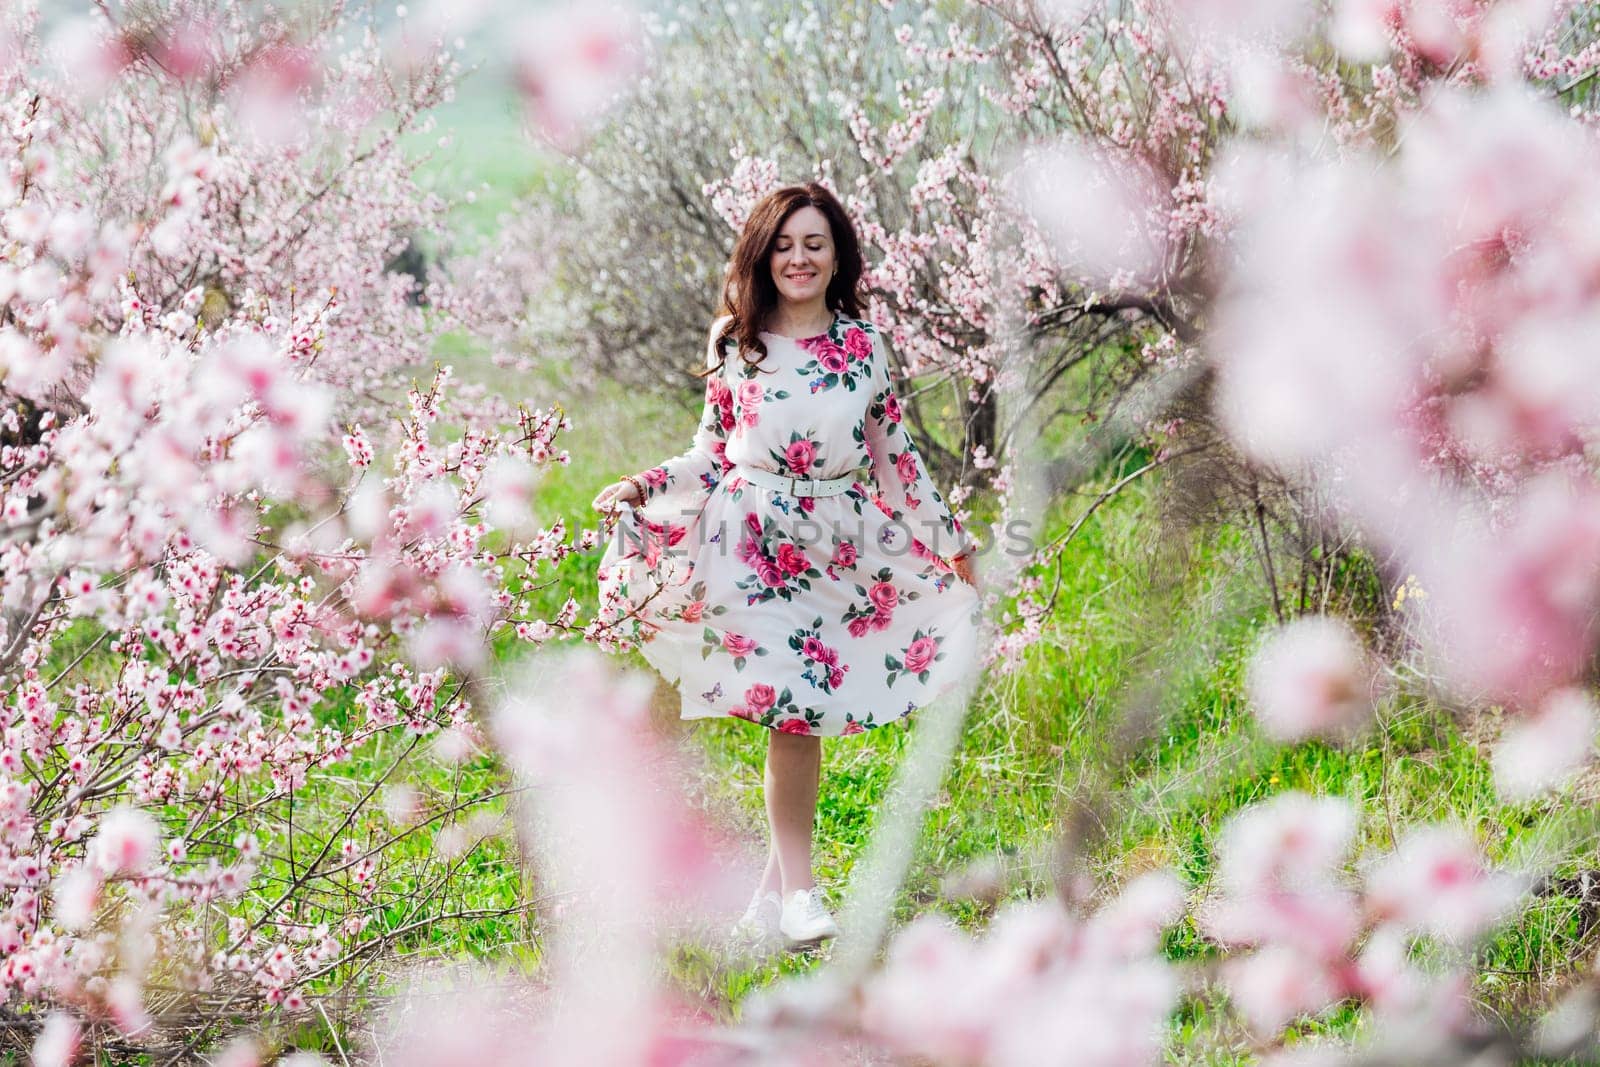 brunette in beautiful dress in pink flowers in a blooming garden walk in spring